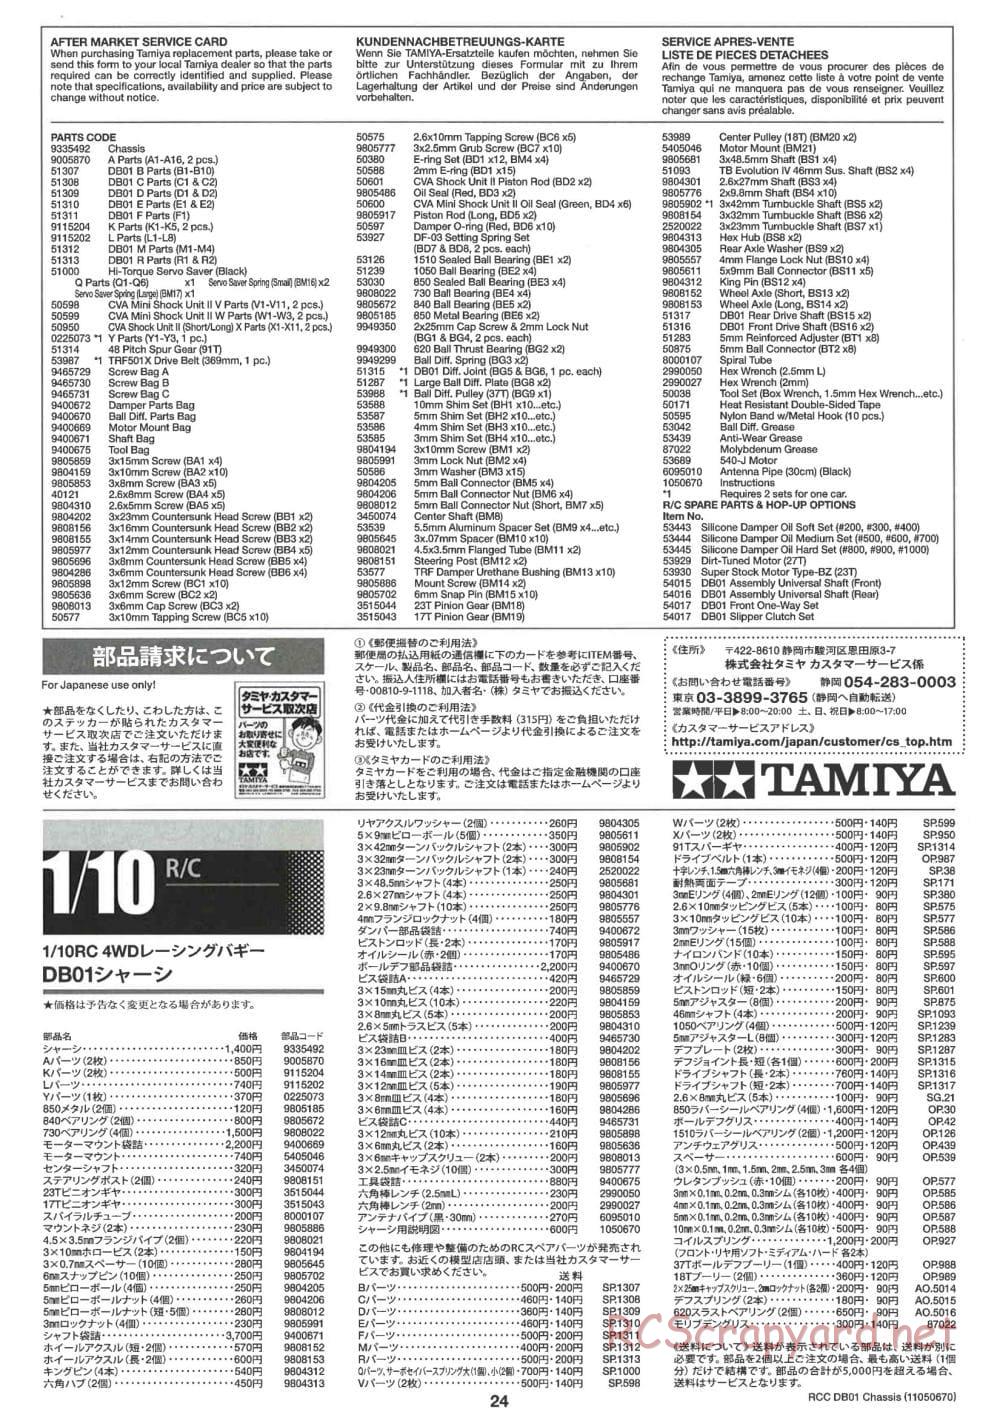 Tamiya - DB-01 Chassis - Manual - Page 24